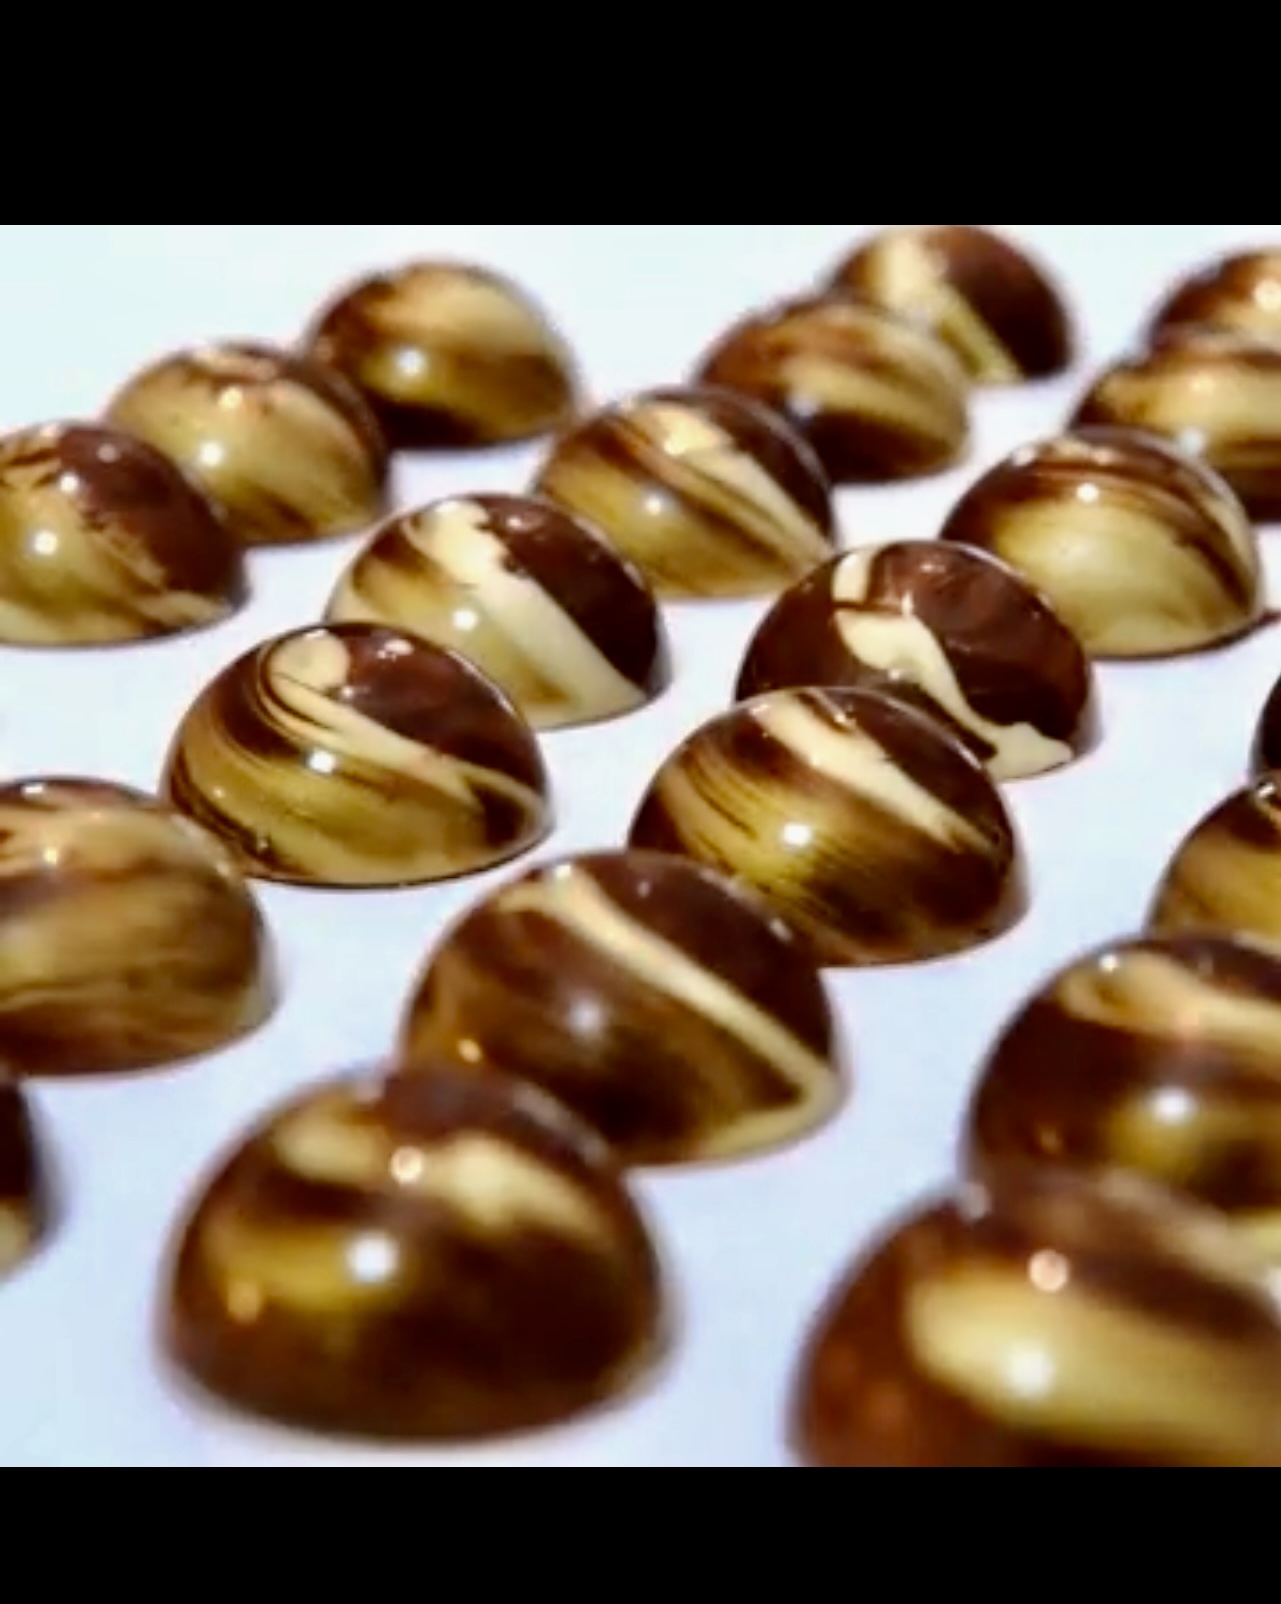 Les chocolats décadents de Joane L'Heureux aux tourbillons blancs et bruns.